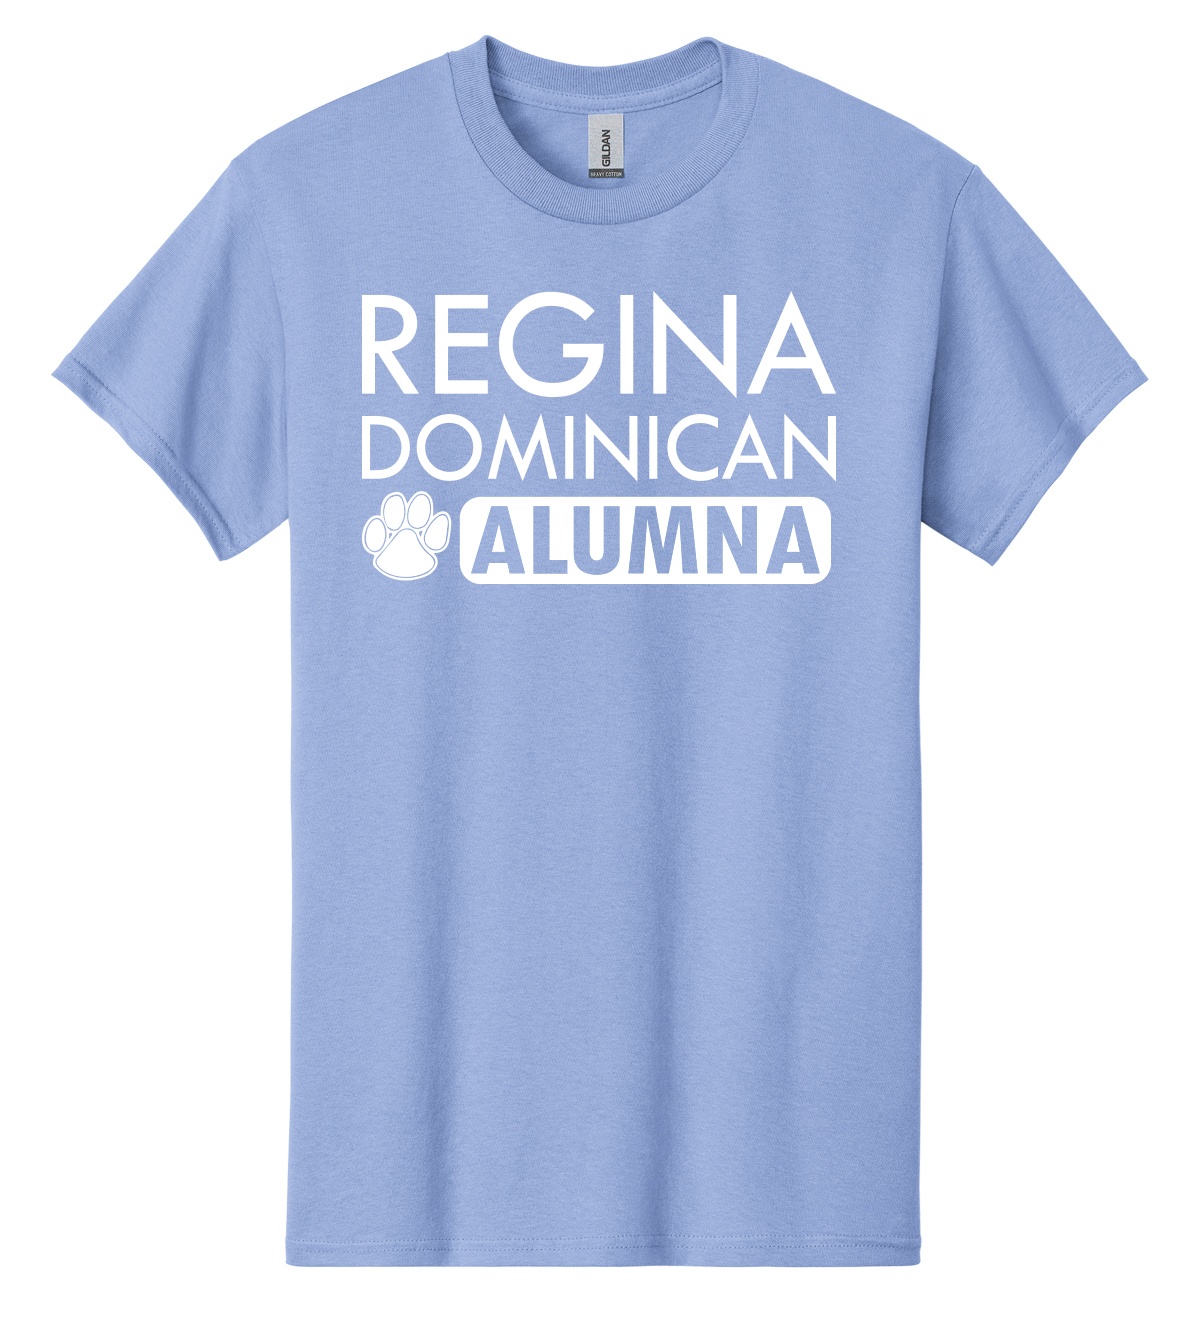 Regina Dominican Carolina Blue Alumna TShirt